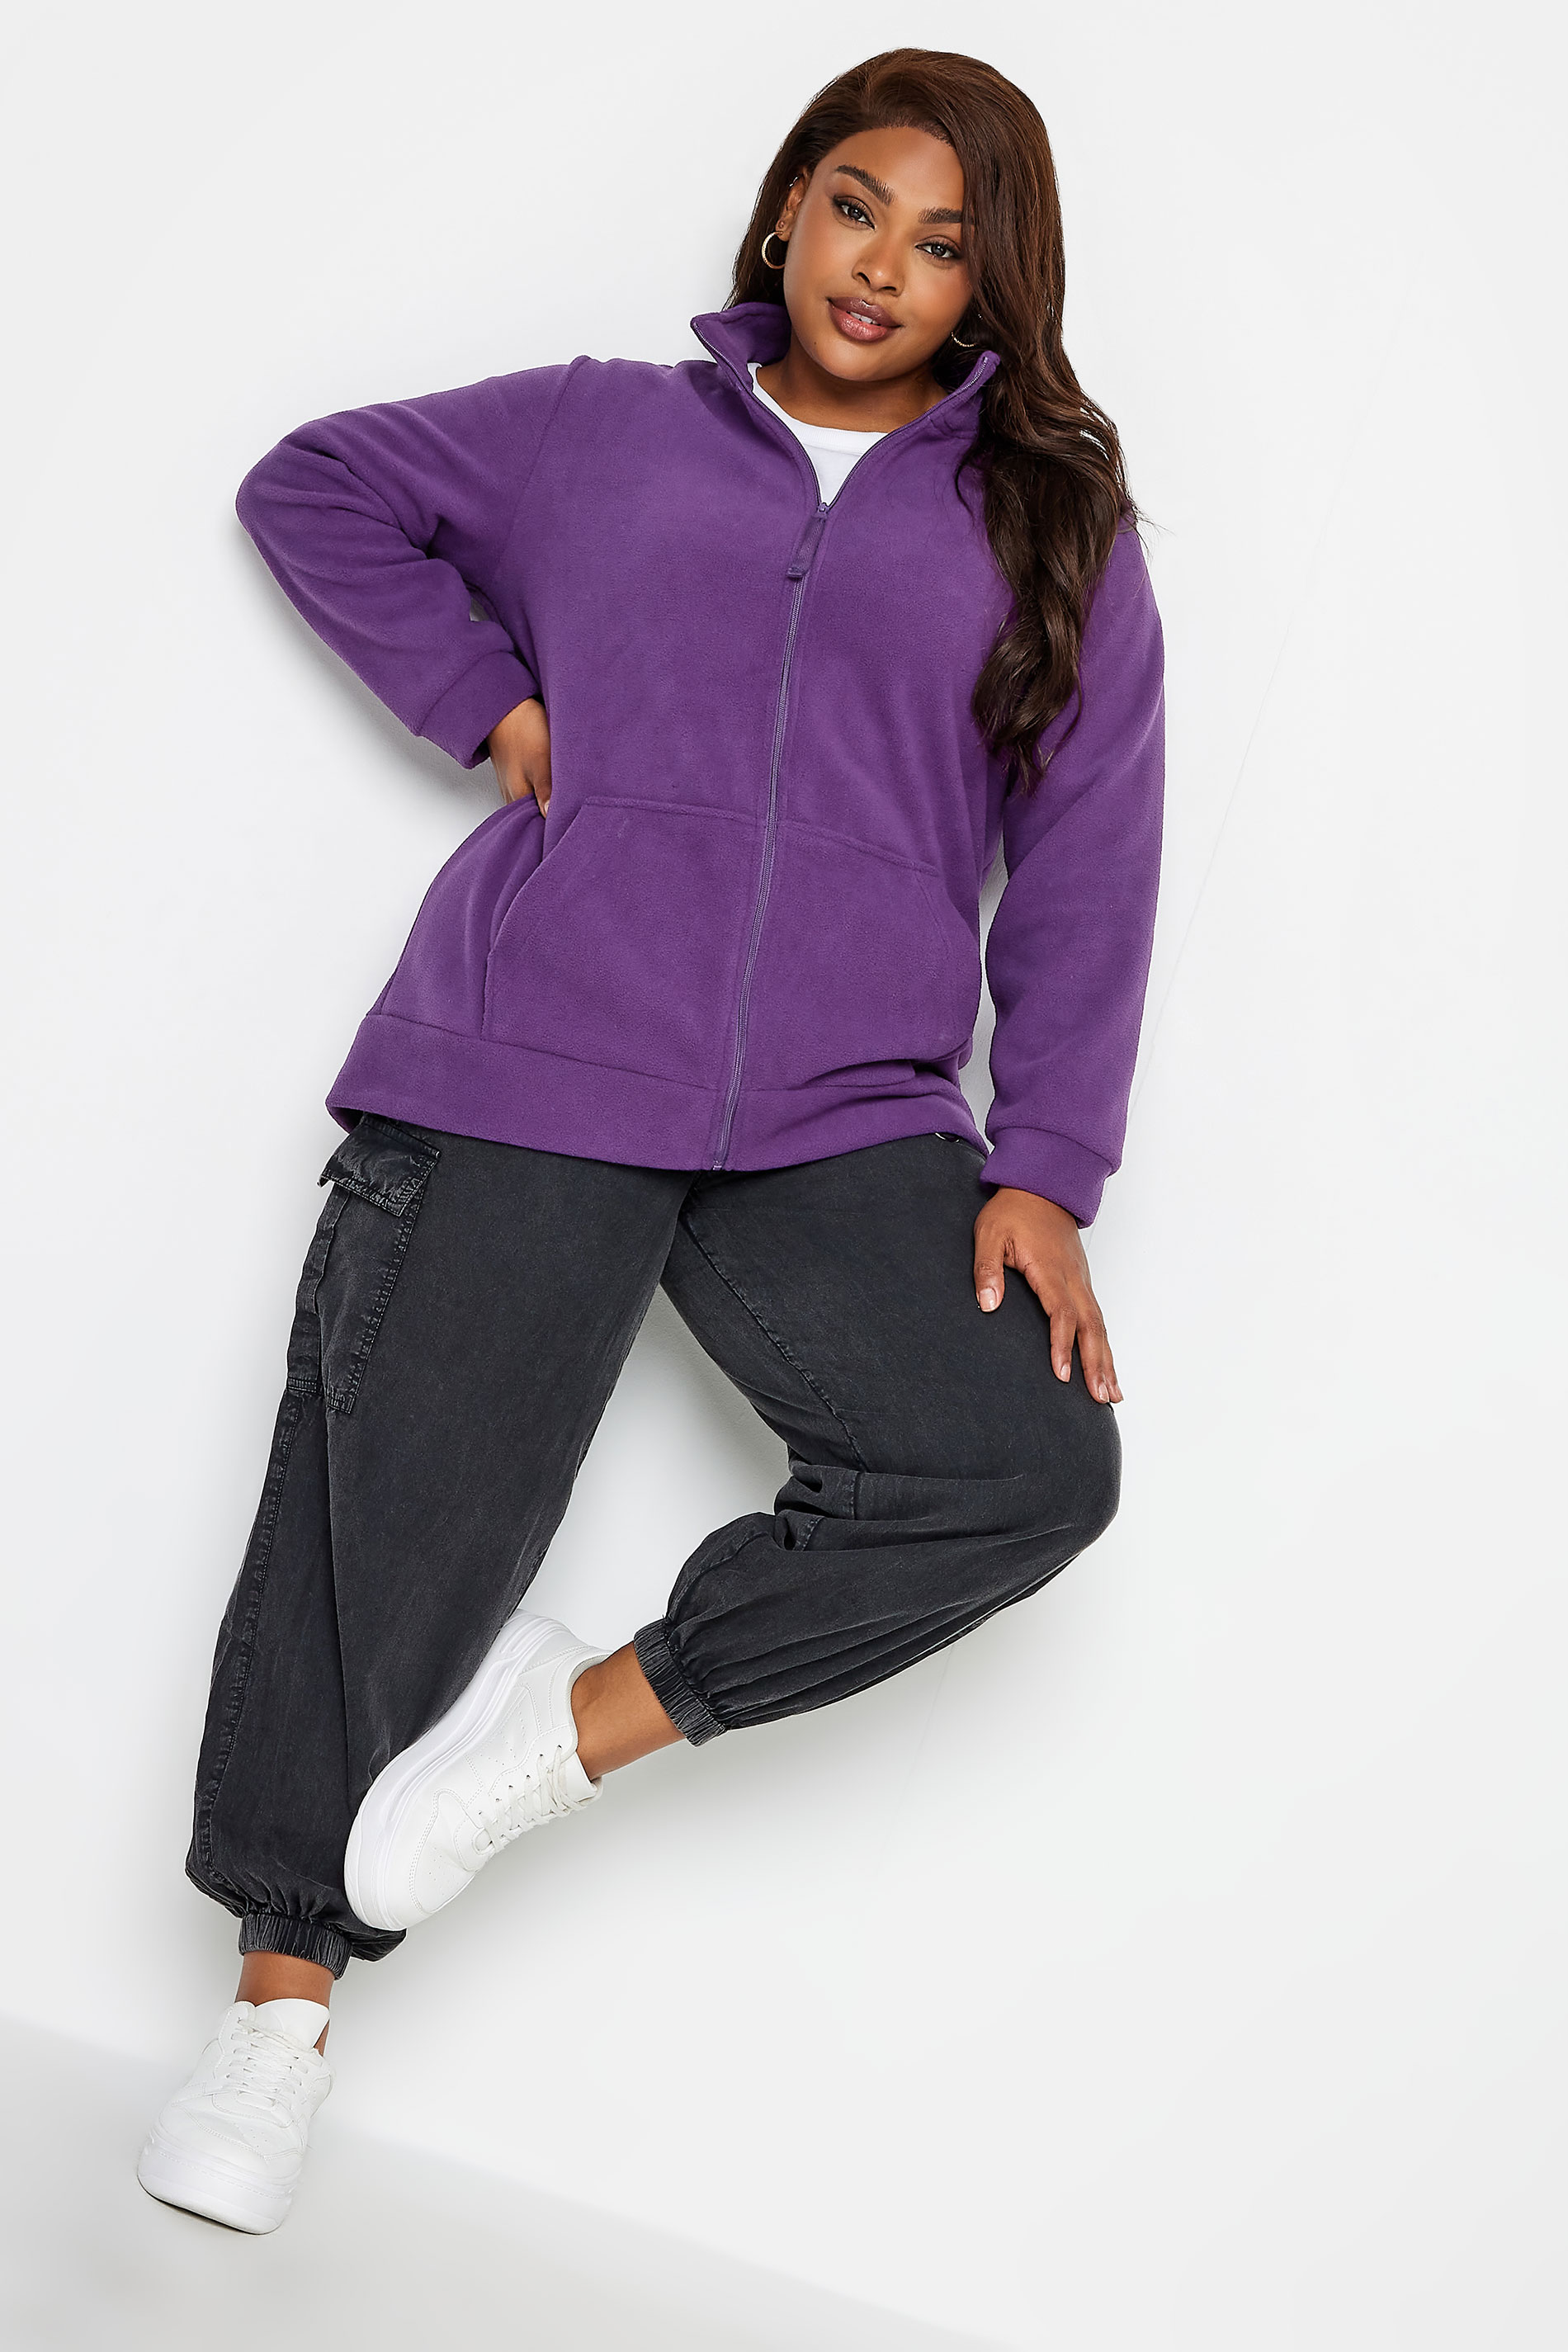 YOURS Plus Size Purple Zip Fleece Jacket | Yours Clothing 2